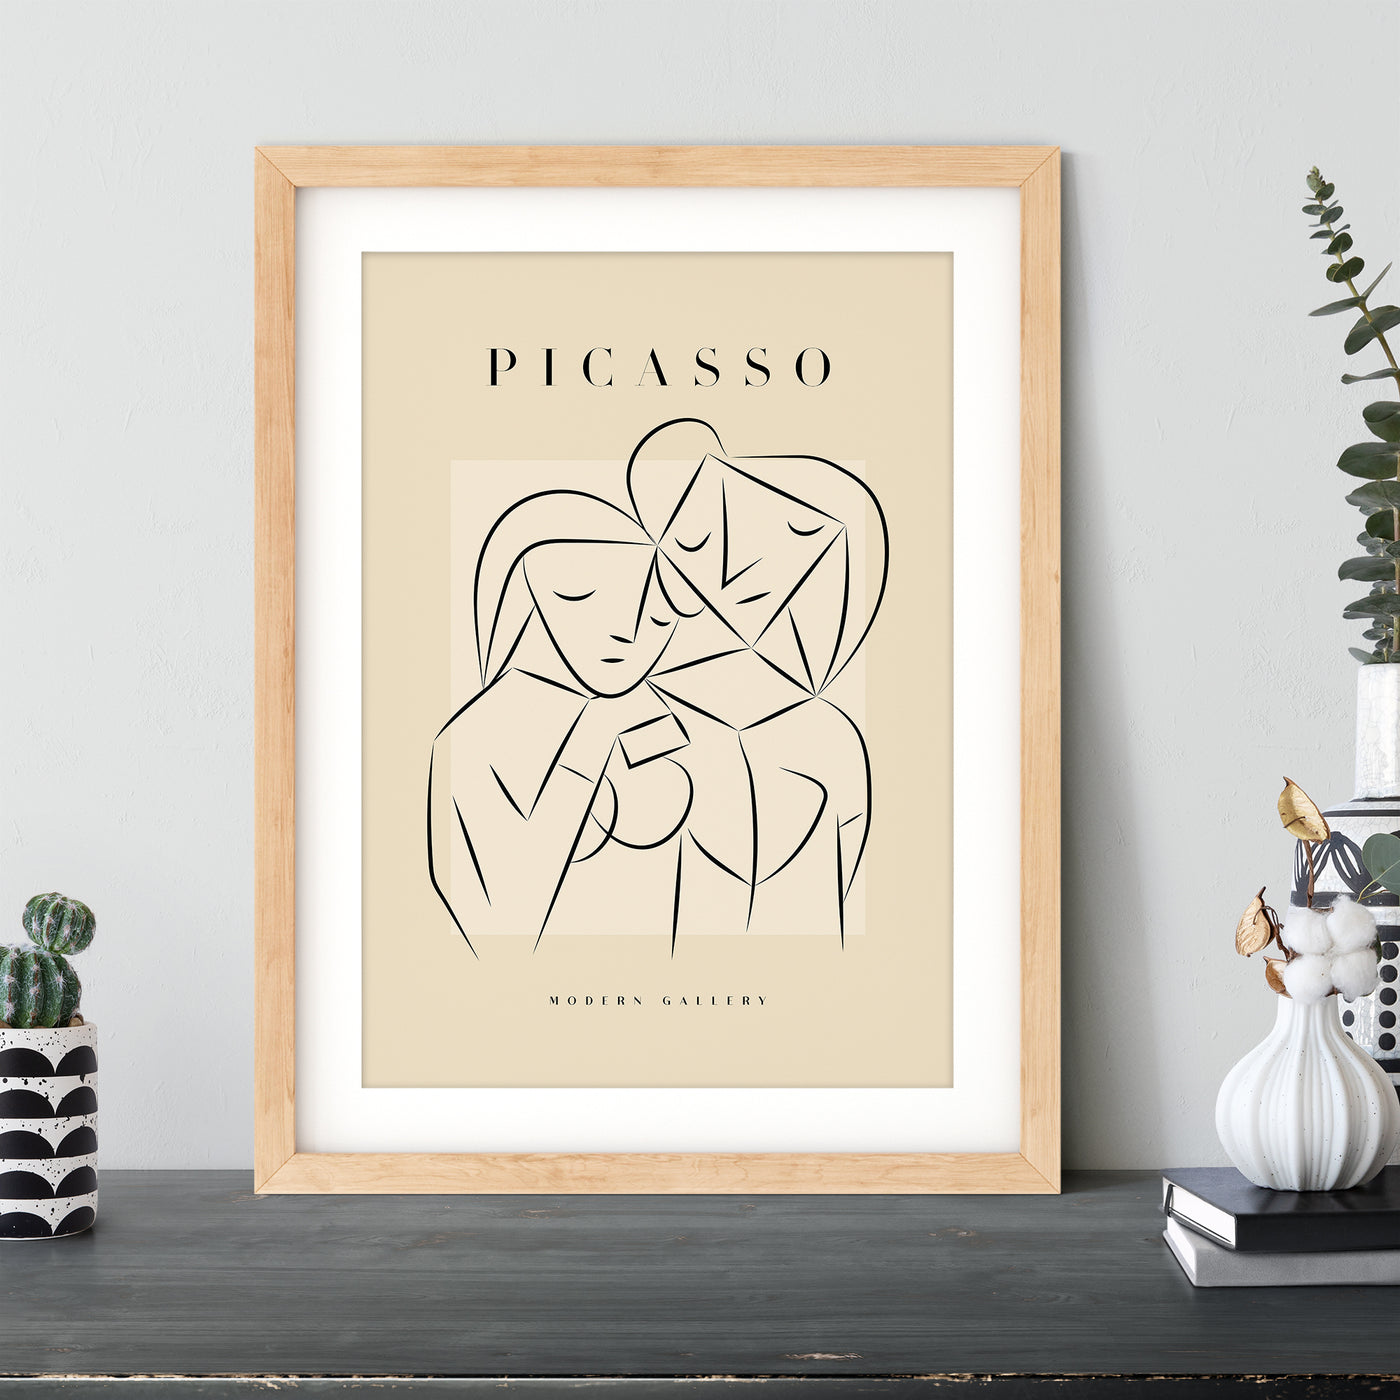 Pablo Picasso - #11